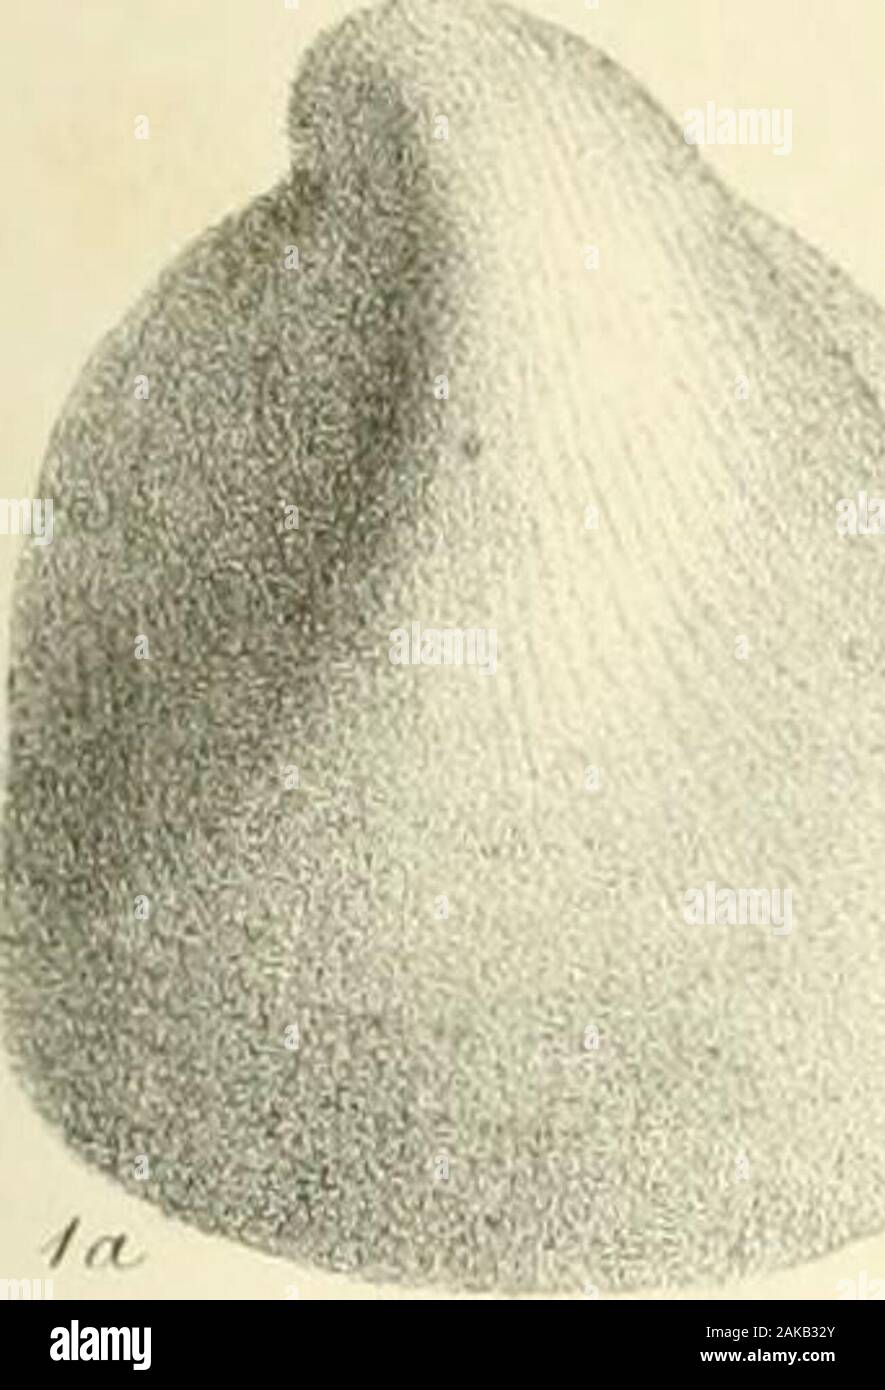 Una monografia di molluschi provenienti dal Grande Oolite principalmente da Minchinhampton e la costa dello Yorkshire . ? Scheda. IX. La Fig. 1a, b. Undulata Ceromya, p. 106. 2a, b. Myacites tumidus, p. 117. 3. Myacites crassiusculus, p. 112. 4. Oblita QueDstedtia, p. 96. 4a, b. Cerniera di ditto. 5. Nucula coenobita, p. 51. 6. Corbula invola, p. 97. 7. Hinnites abjectus, p. 125. 8", b. Astarte excentrica, p. 83. 9. " Squamula, p. 82. 10a, b. ,, Valori minimi, p. 82. 11. ,, Depressa, p. 85. 12. " Rotunda, p. 84. 13a, b. " Pumila, p. 83. 14, 15a, b. " Interlineata, p. 87. 16. ,, Wiltonii, p. 87. 17a, b. ,, Angulata, p. Foto Stock